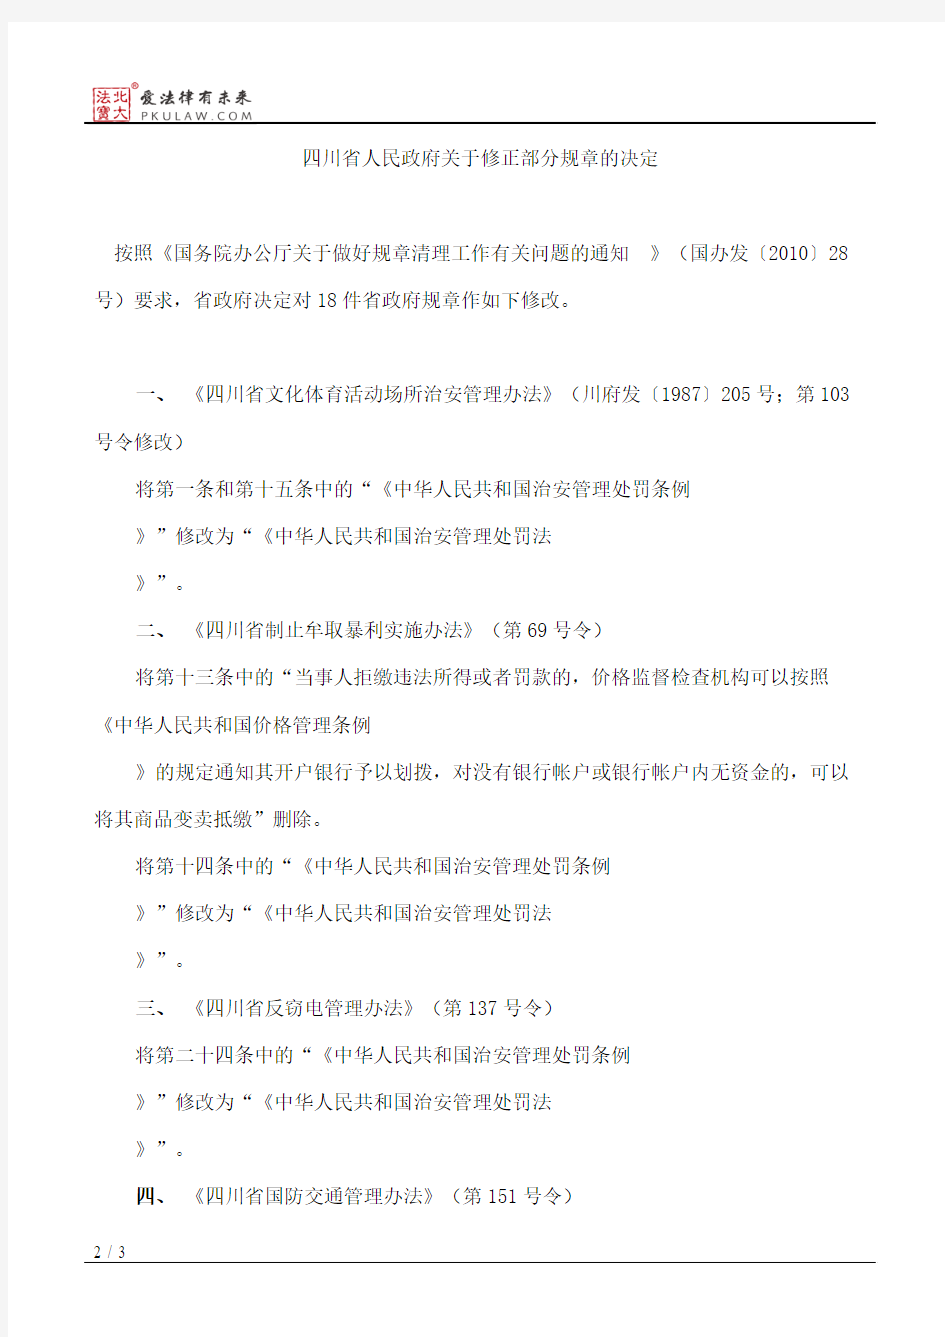 四川省人民政府关于修正部分规章的决定